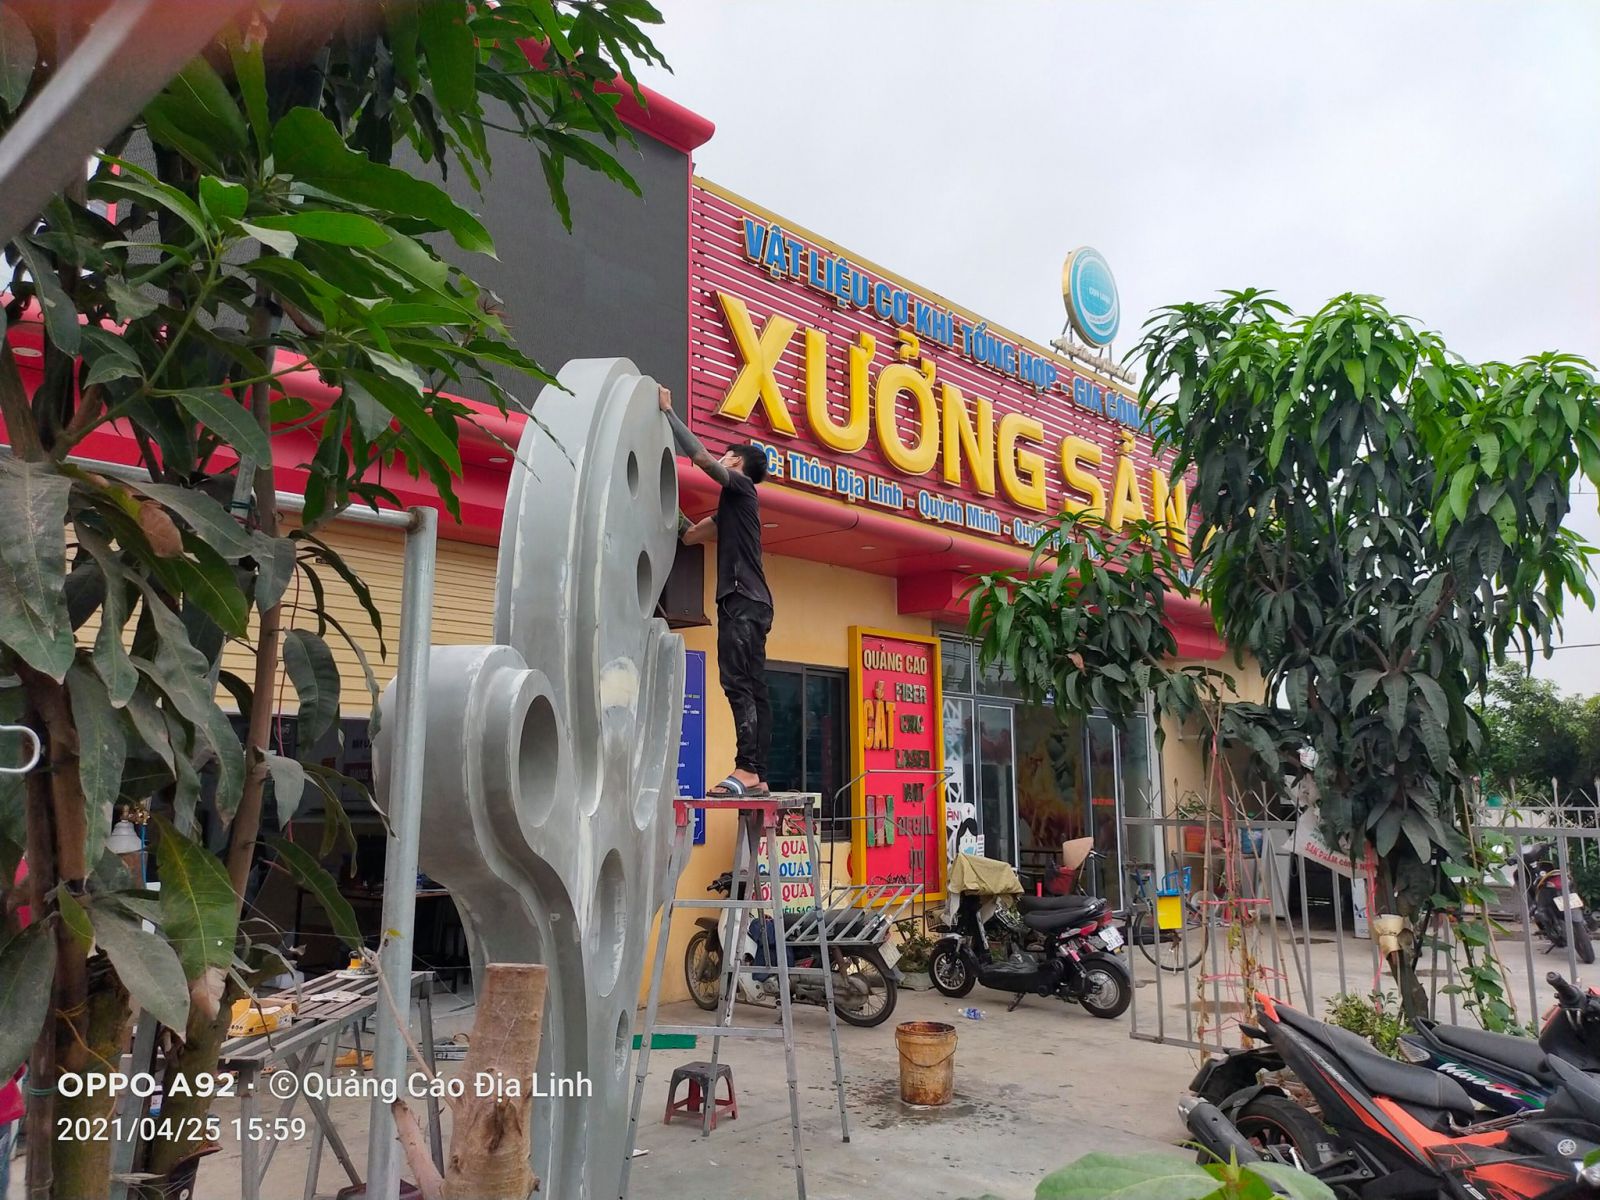 Xưởng sản xuất thi công biển quảng cáo chuyên nghiệp của Quảng cáo Địa Linh ở Thái Bình